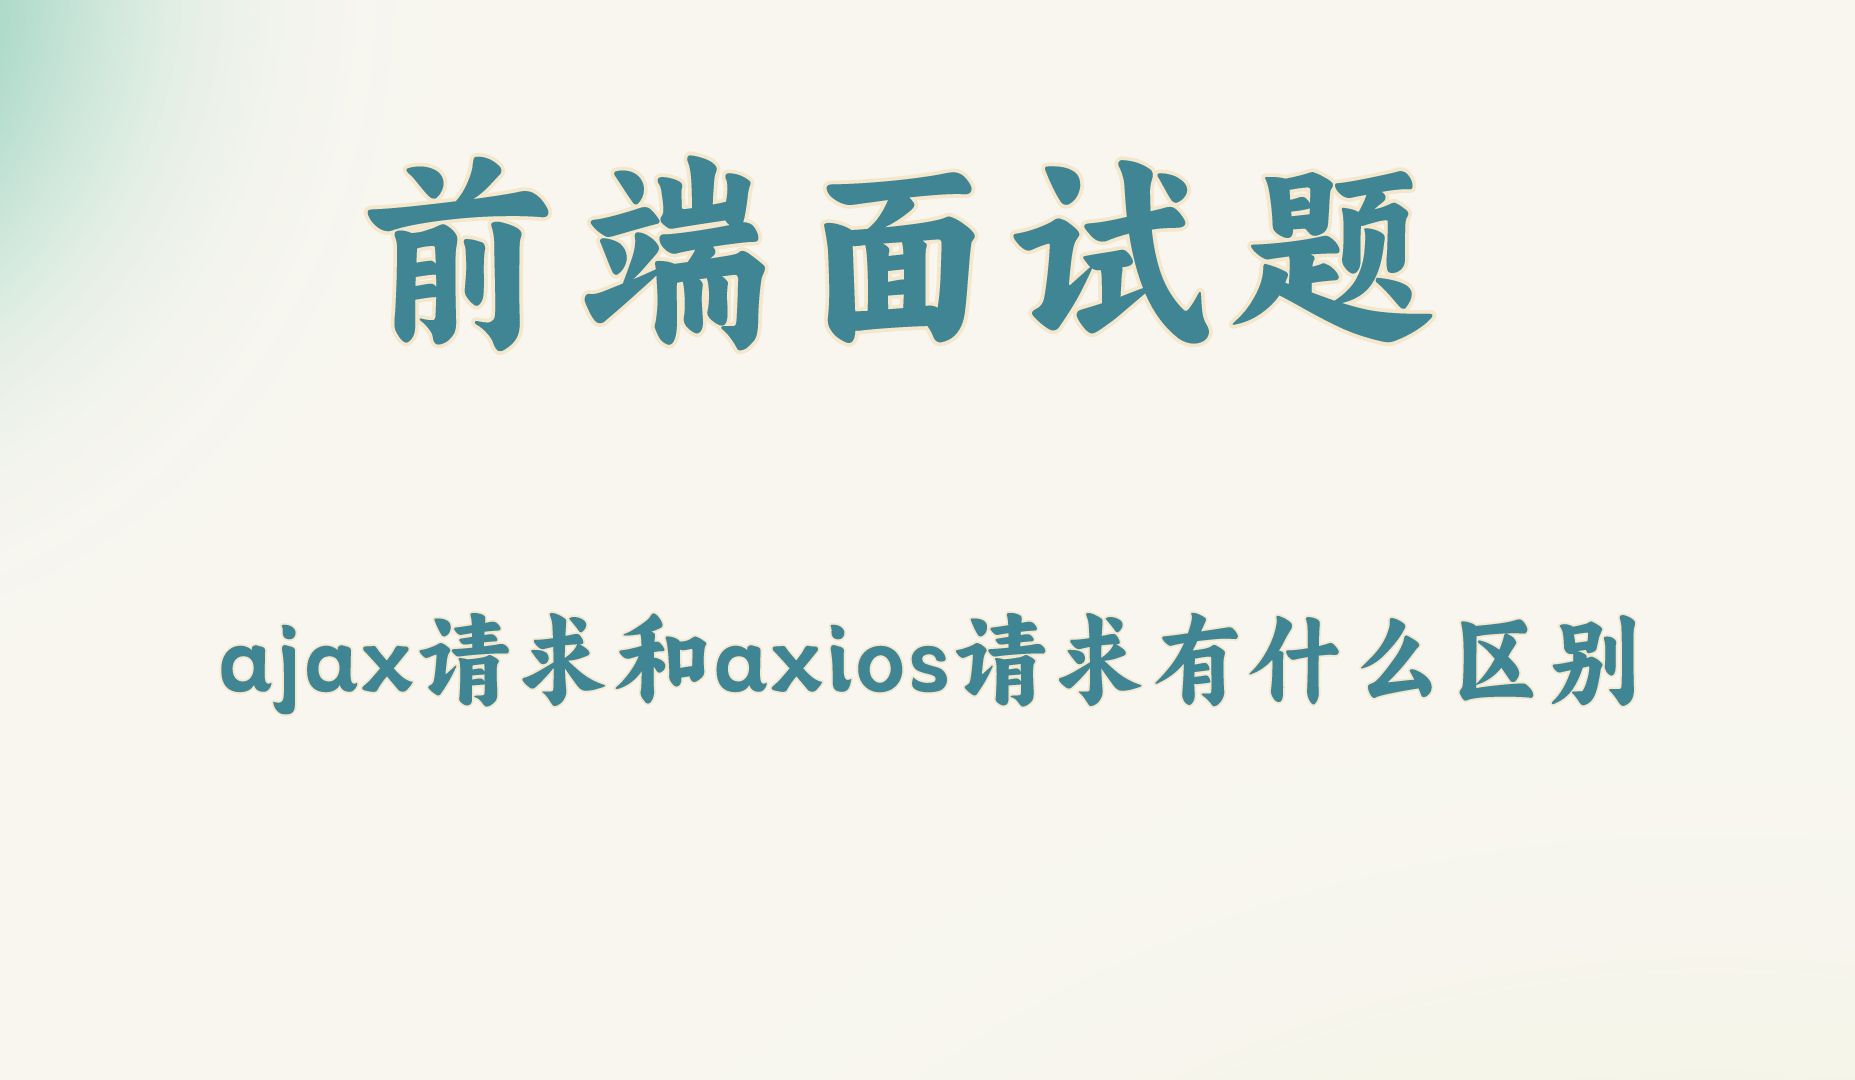 【前端面试题】ajax请求和axios请求有什么区别